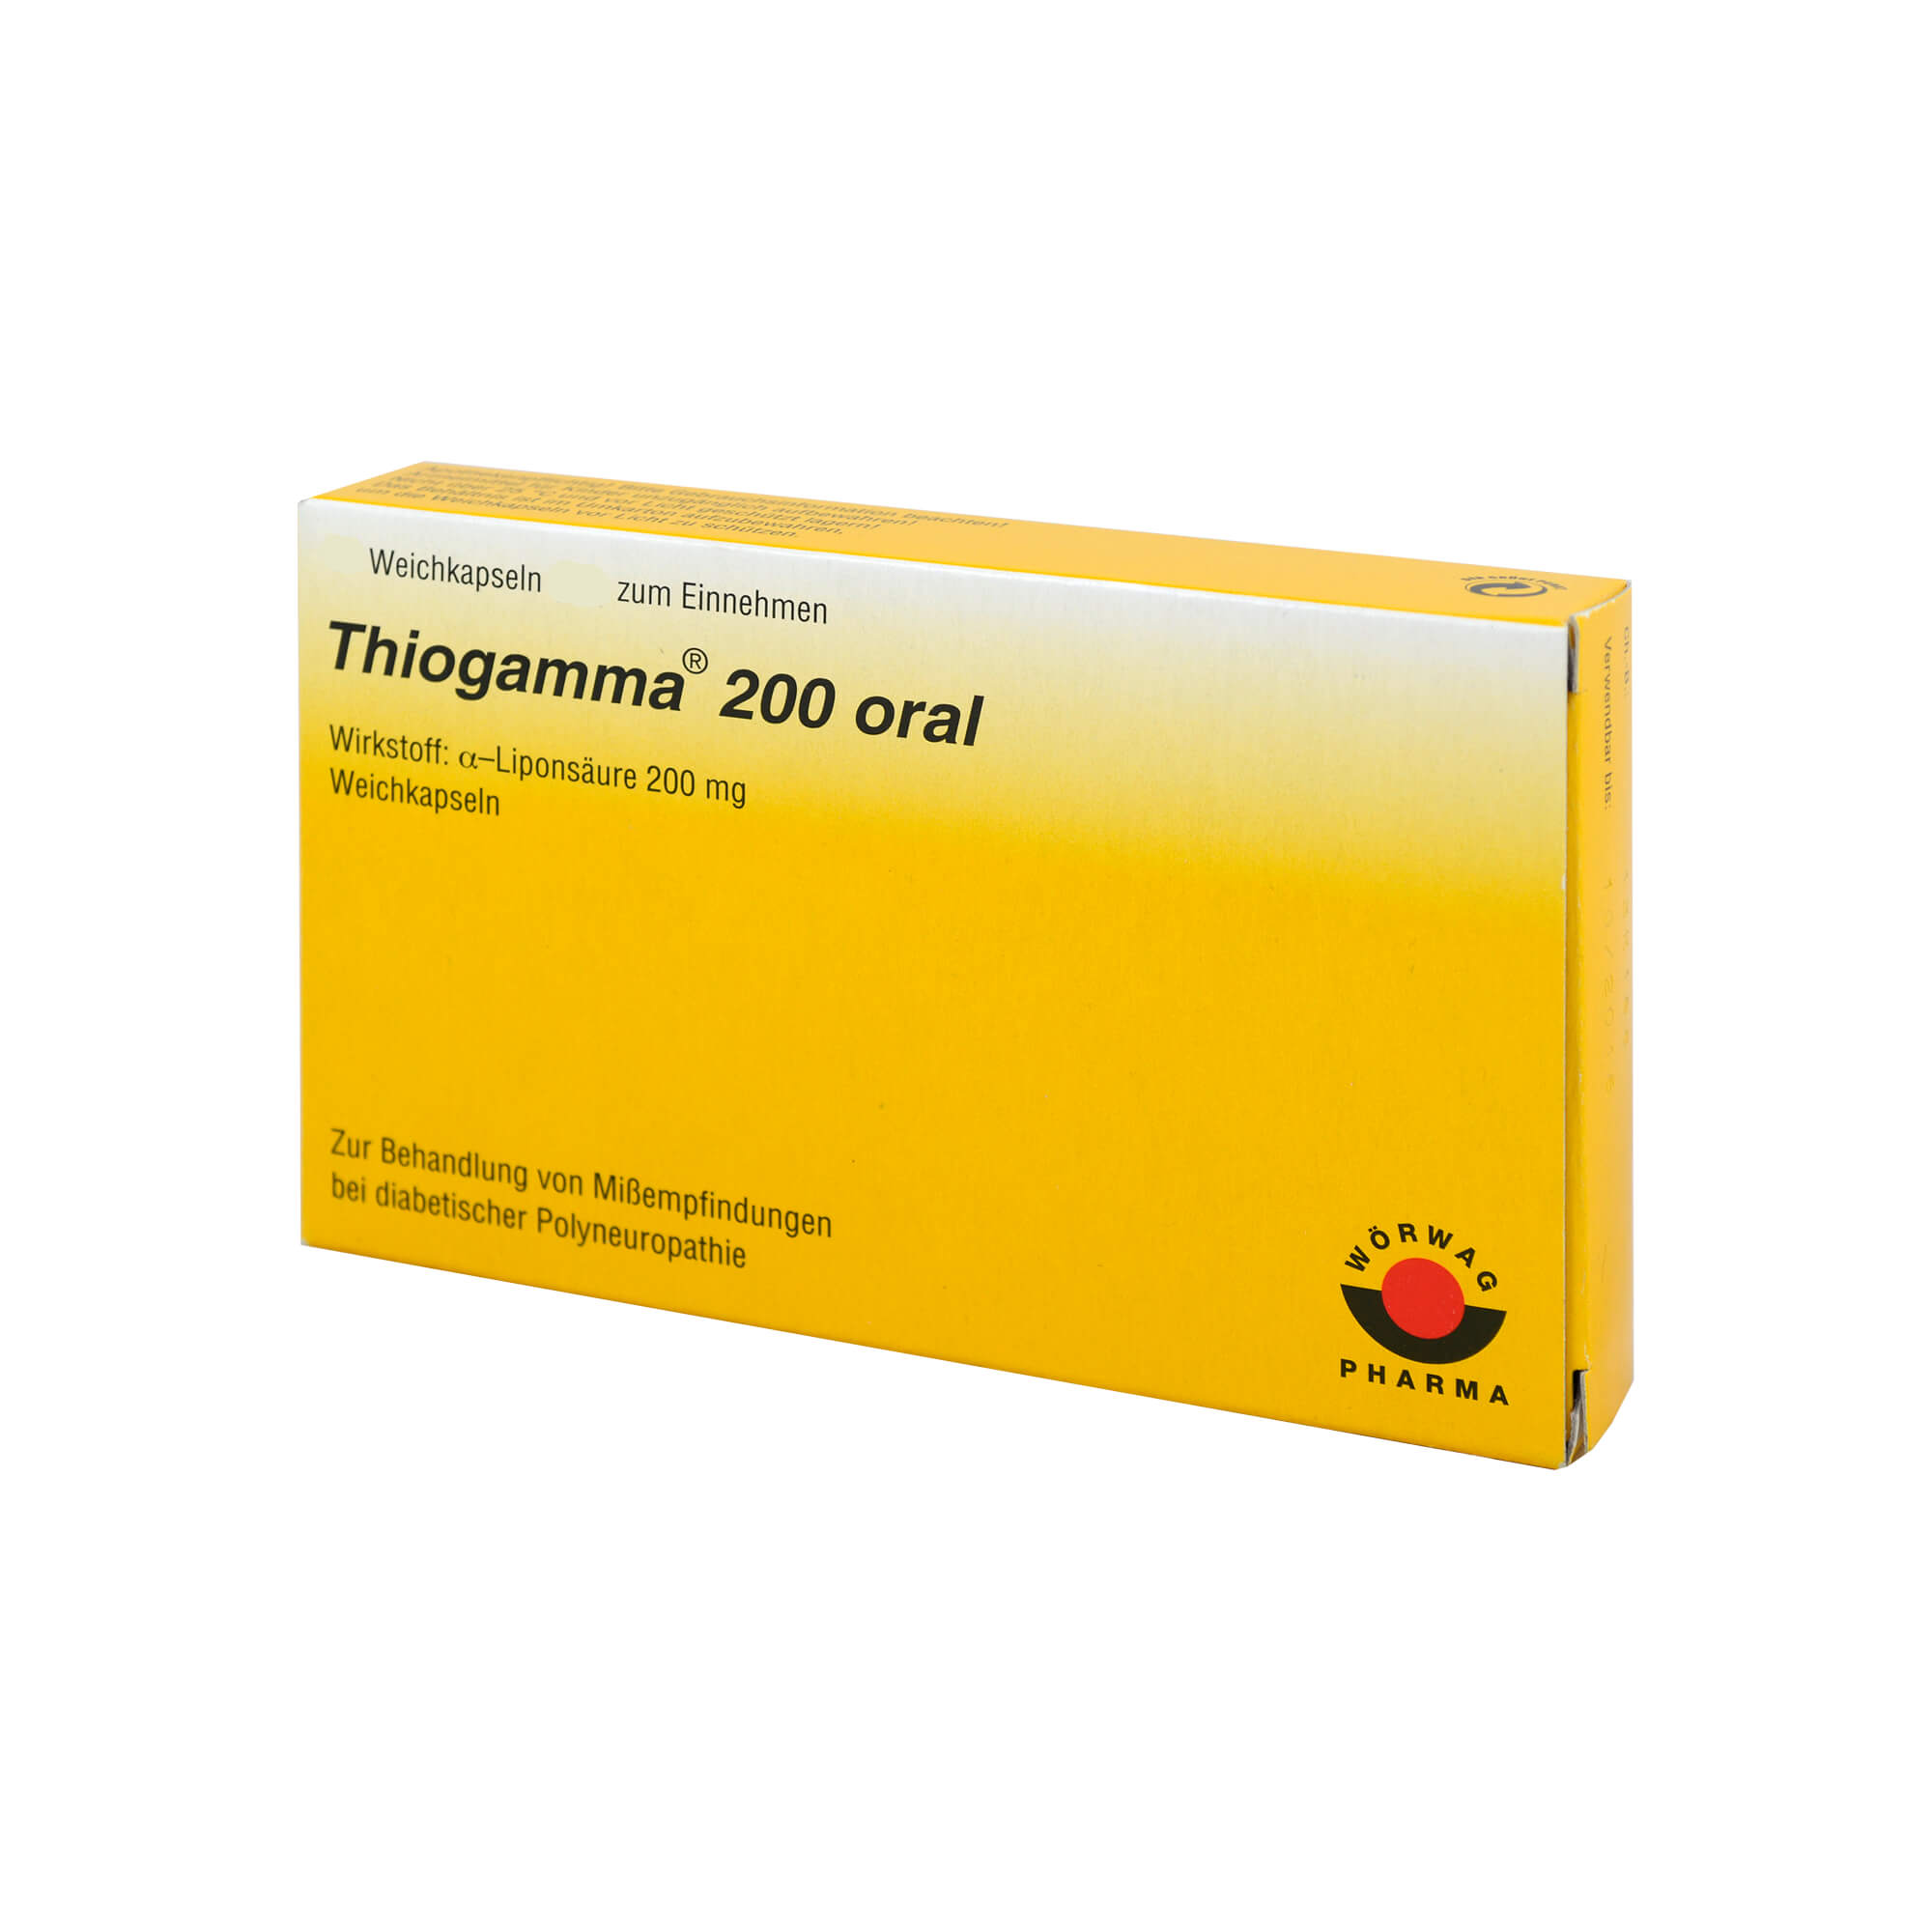 Thiogamma 200 oral wird angewendet bei Missempfindungen bei diabetischer Nervenschädigung (Polyneuropathie).